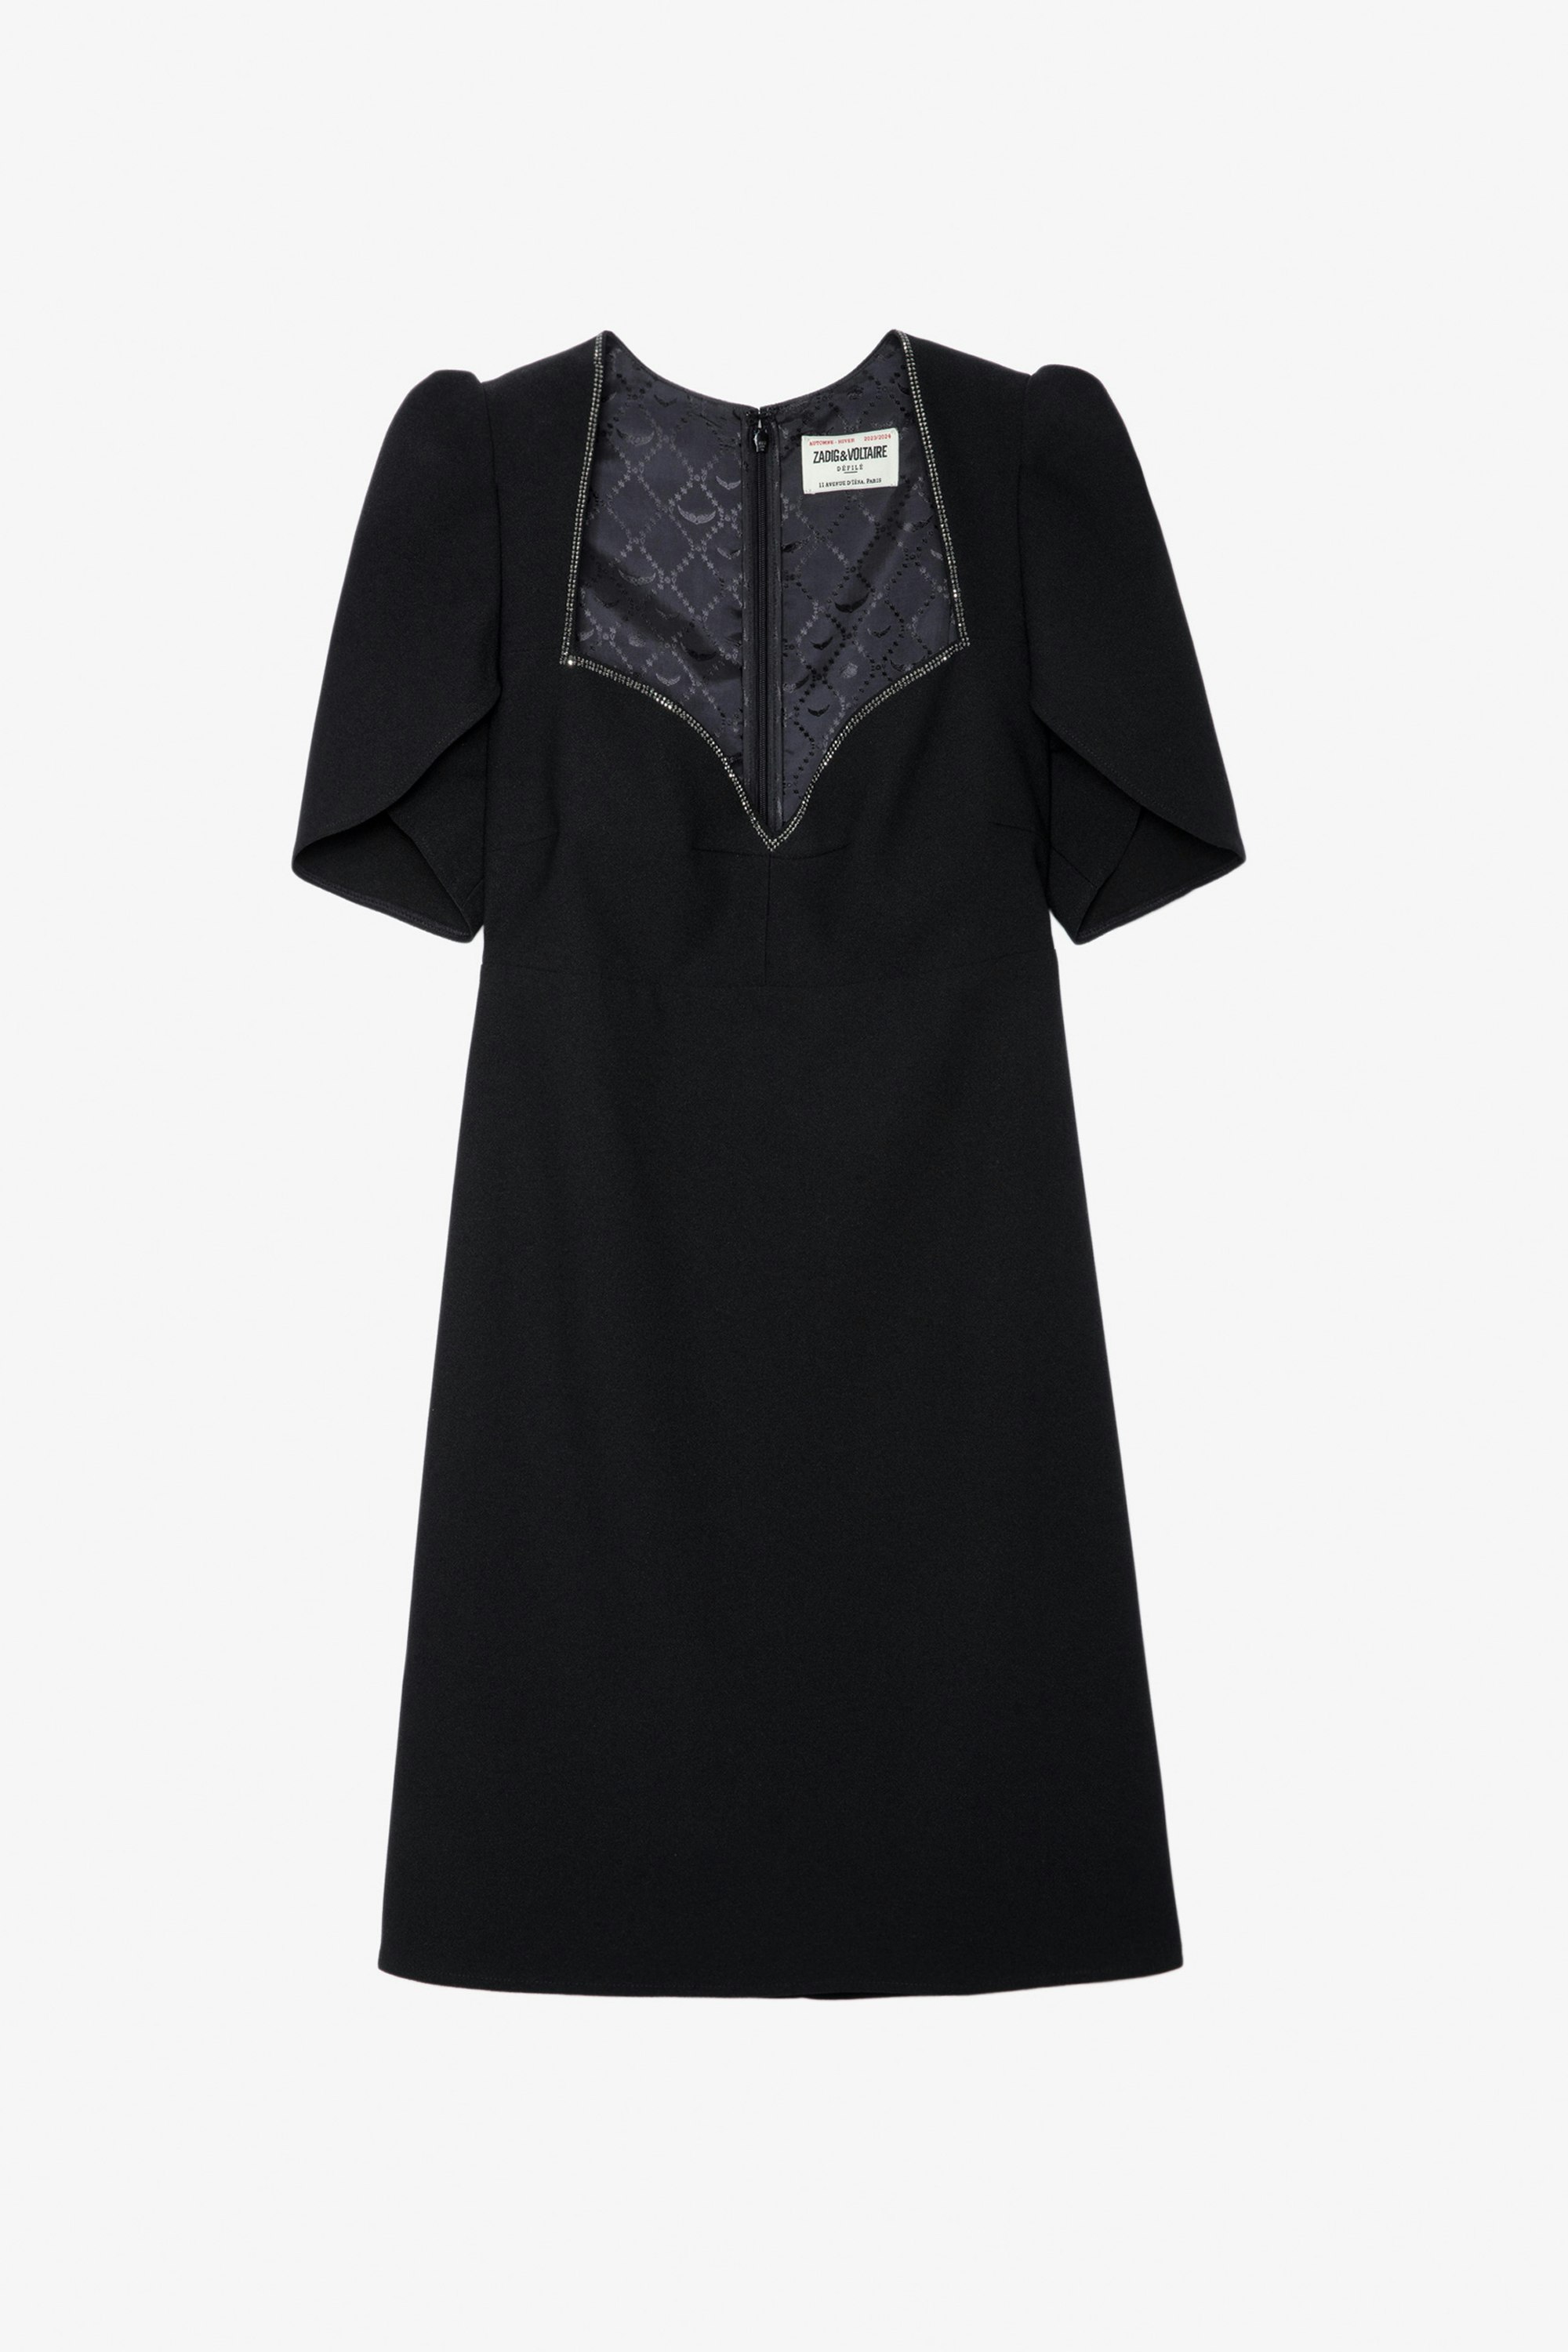 Roxelle Diamanté Dress - Women’s short black crepe dress with diamanté wrap neckline and short asymmetrical sleeves.